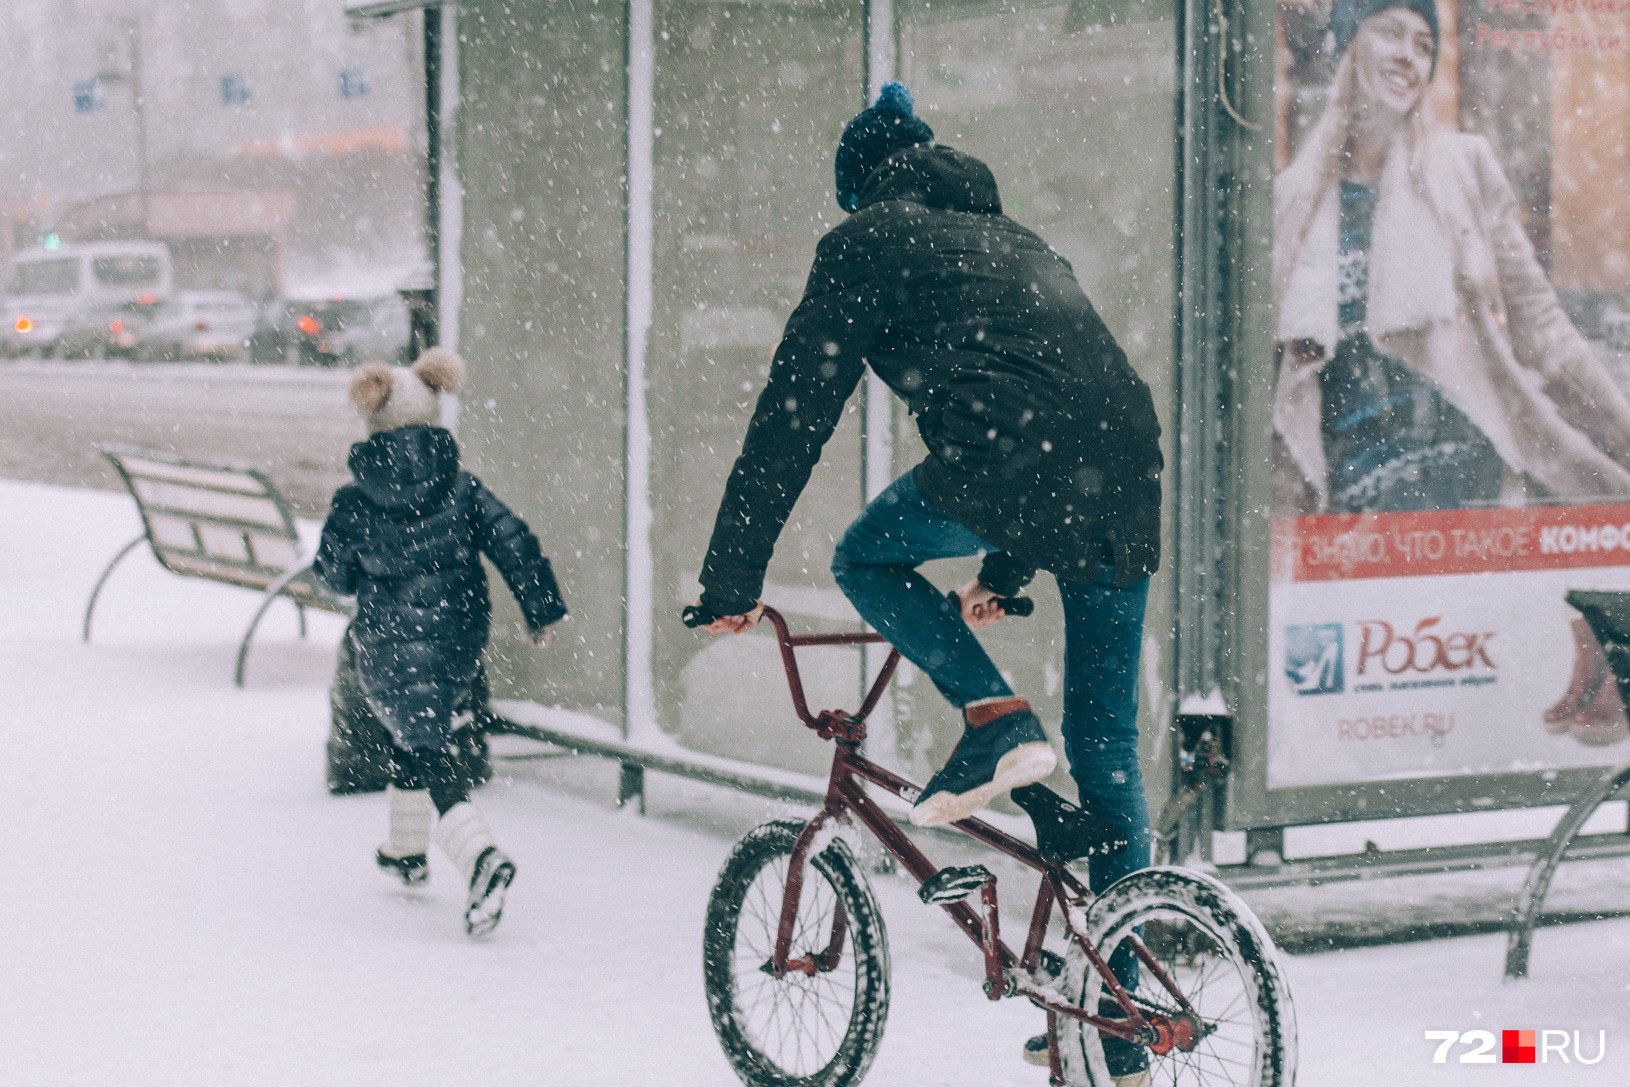 Некоторые тюменцы разъезжают на велосипедах даже зимой. Вы тоже так делаете? Если да — расскажите в комментариях, насколько это удобно